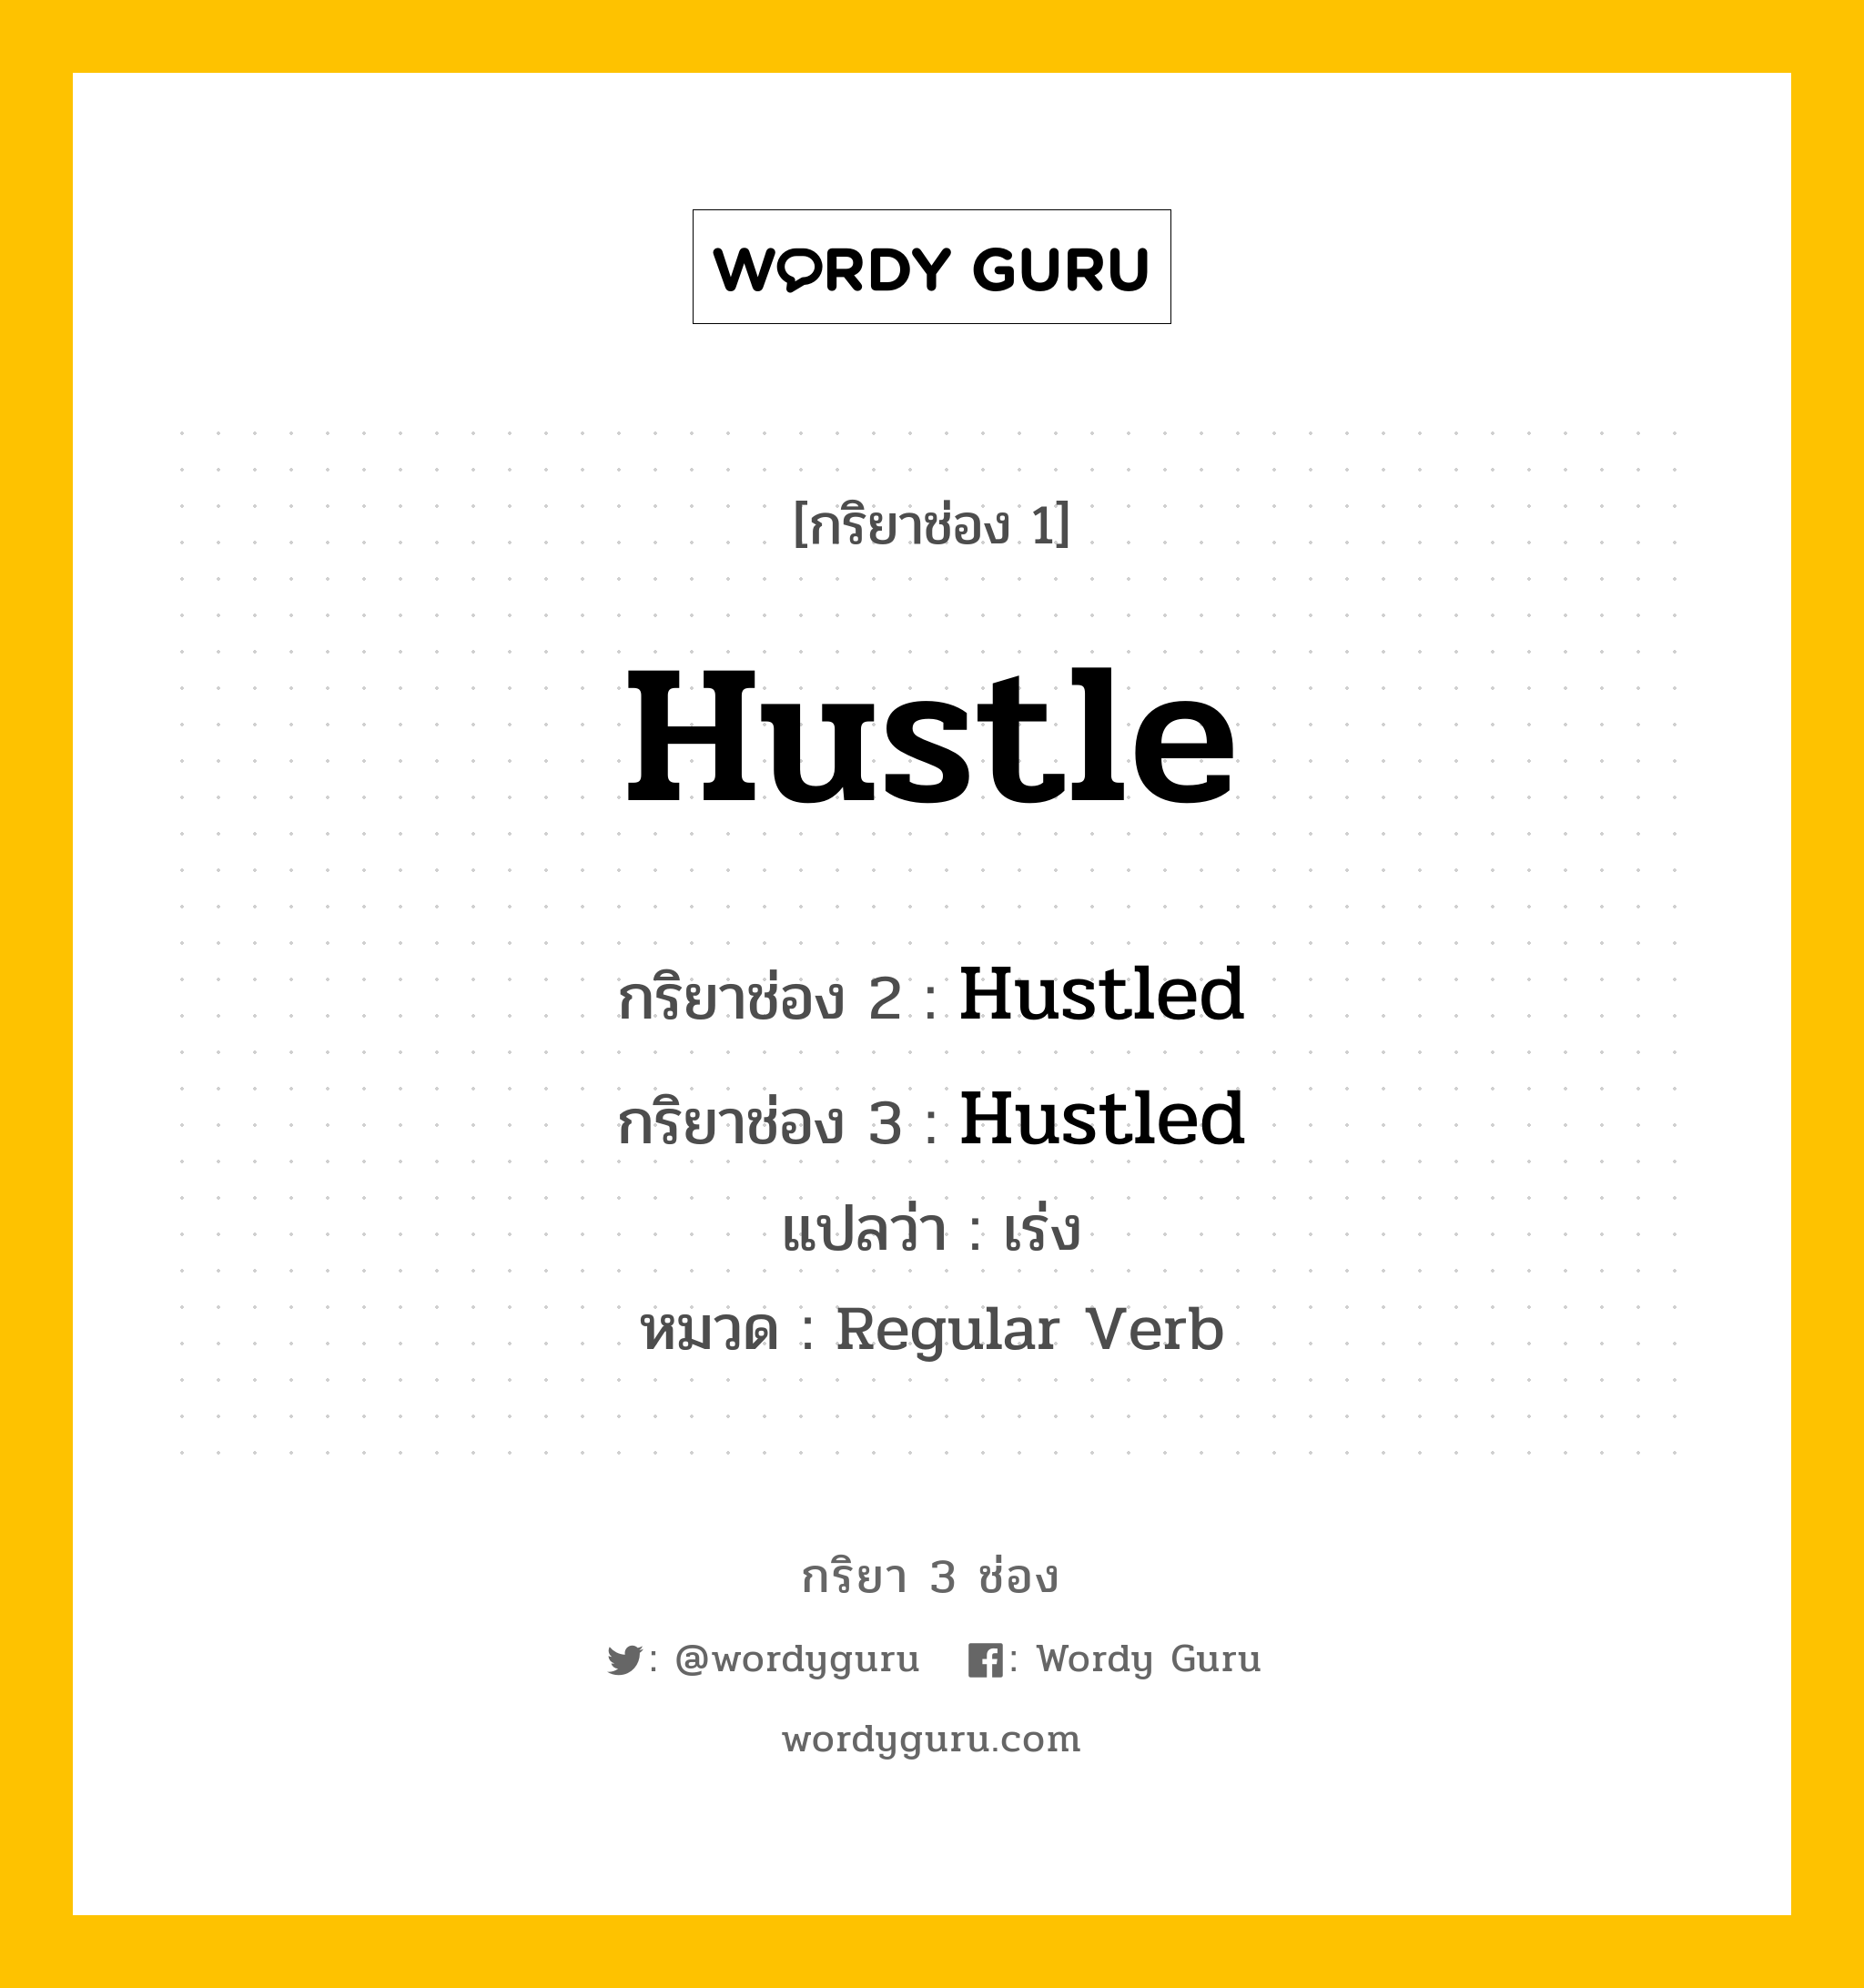 กริยา 3 ช่อง: Hustle ช่อง 2 Hustle ช่อง 3 คืออะไร, กริยาช่อง 1 Hustle กริยาช่อง 2 Hustled กริยาช่อง 3 Hustled แปลว่า เร่ง หมวด Regular Verb หมวด Regular Verb